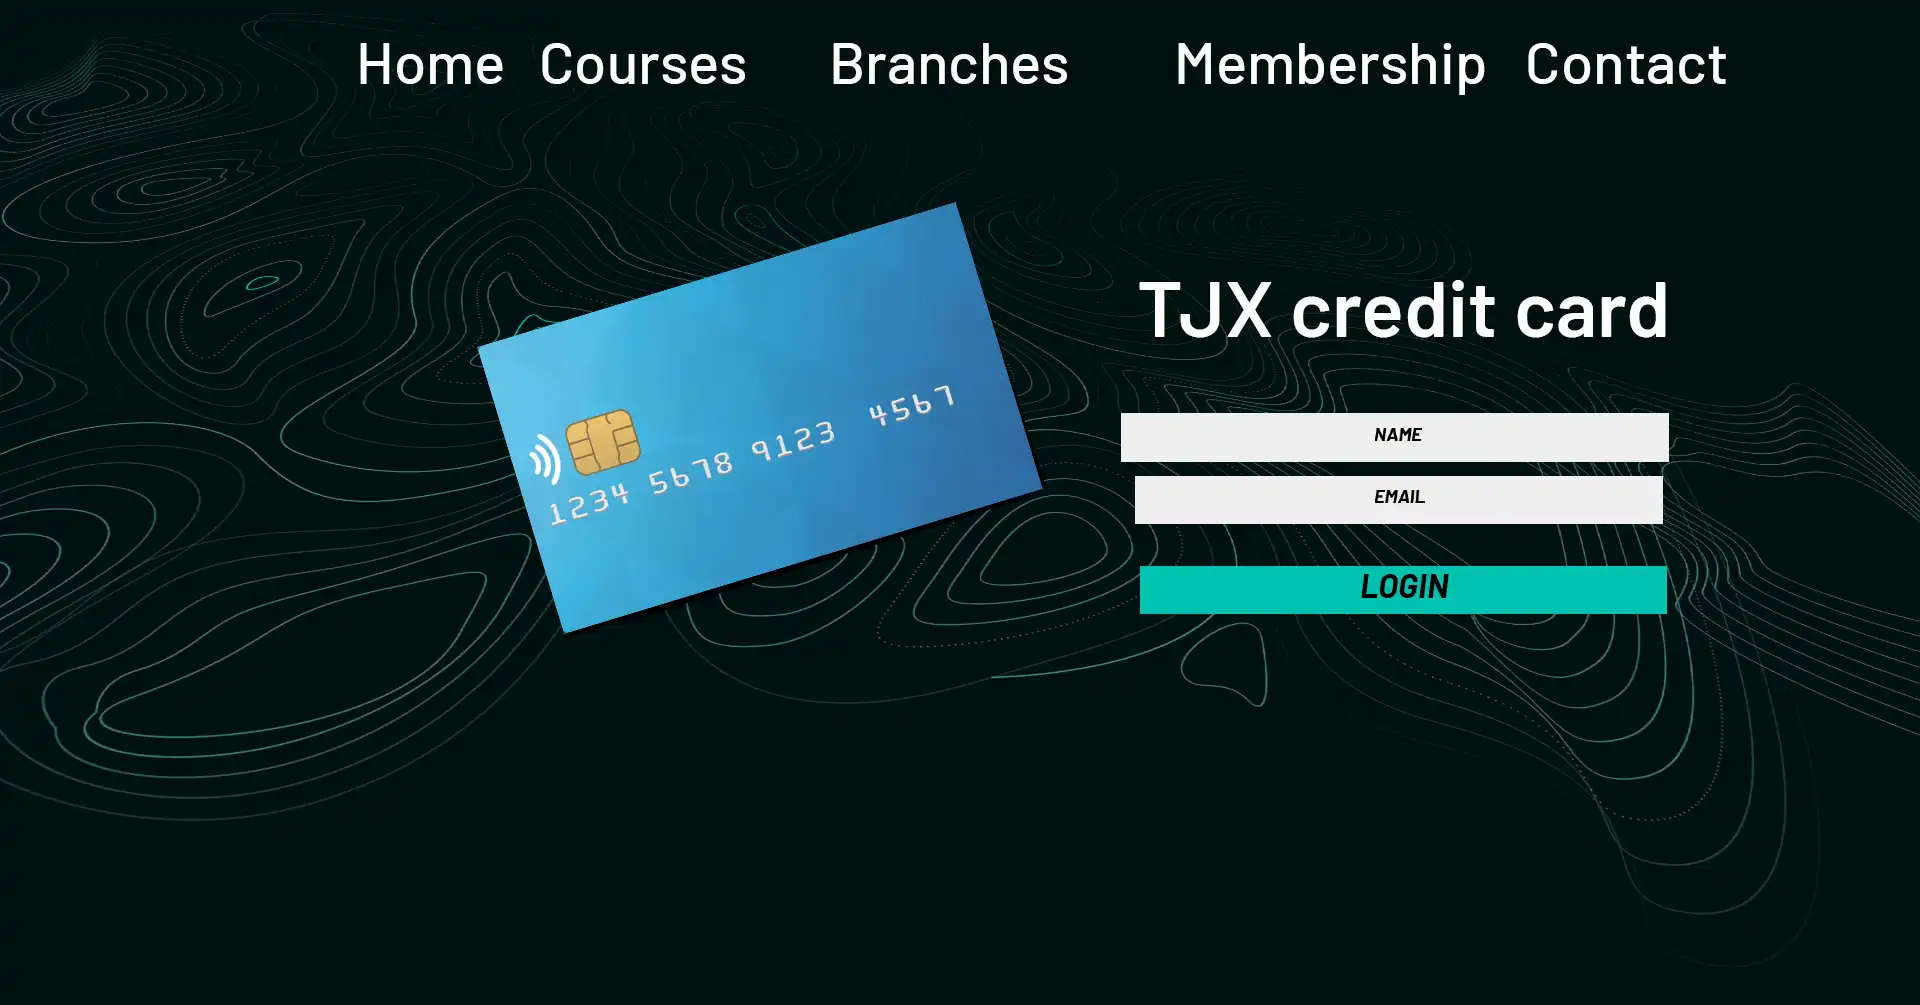 TJX Credit Card Login